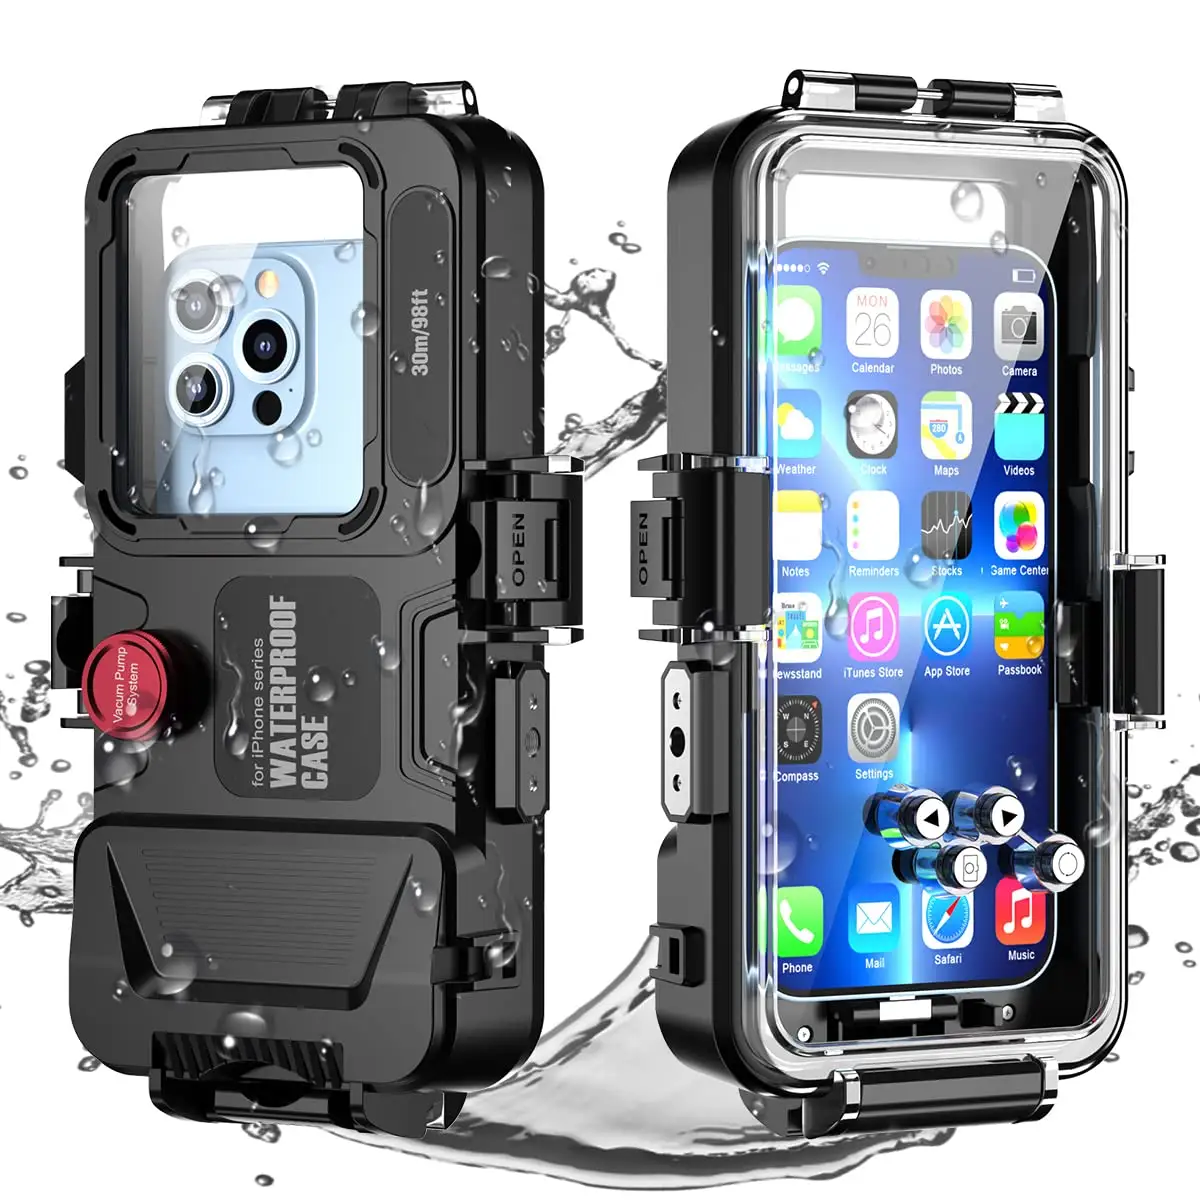 עמיד למים צלילה שחייה מגן עבור iPhone סדרת 98FT/30M מתחת למים צילום דיור ip68 עמוק ים צלילה טלפון מקרה